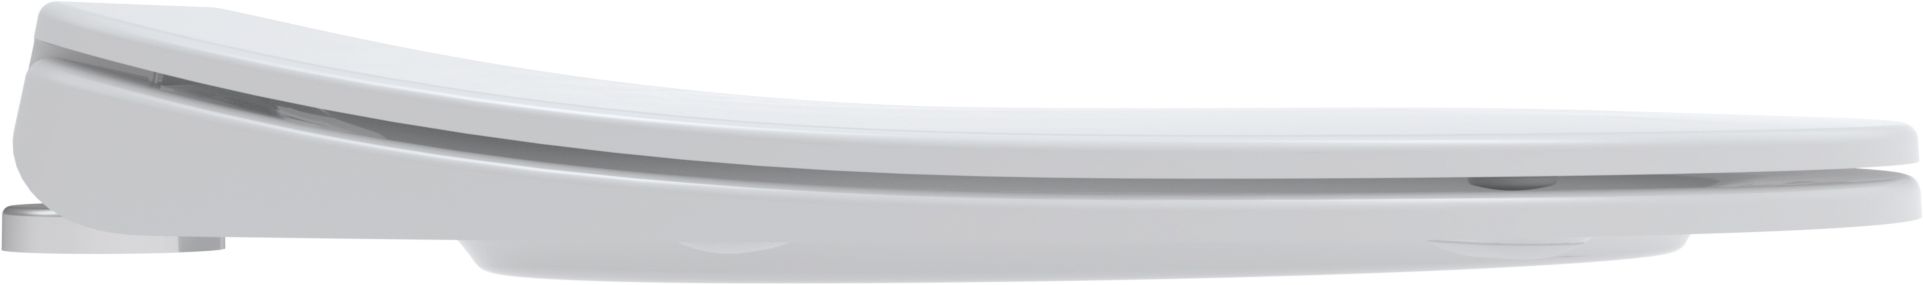 Toilet seat Aquarius S, white